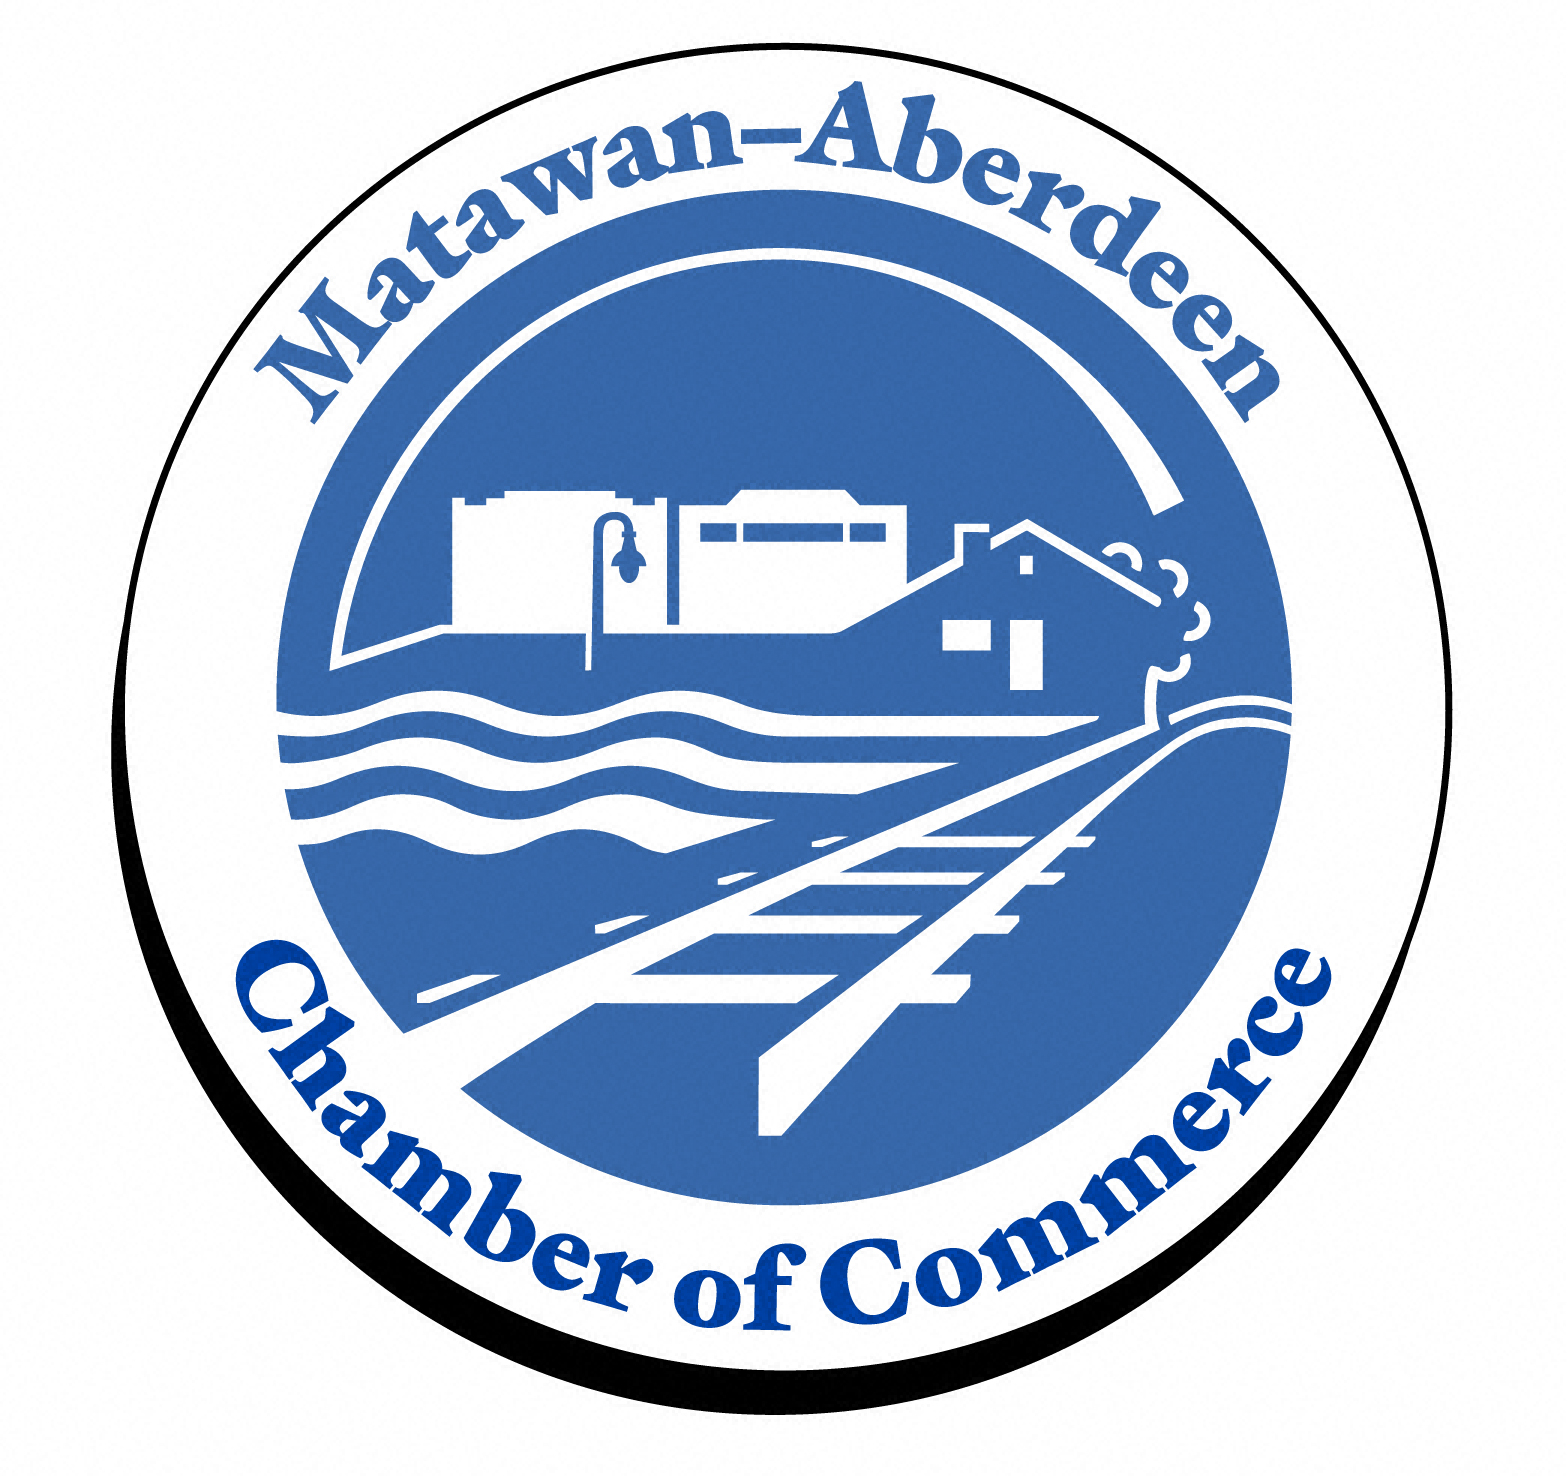 Matawan-Aberdeen Chamber of Commerce